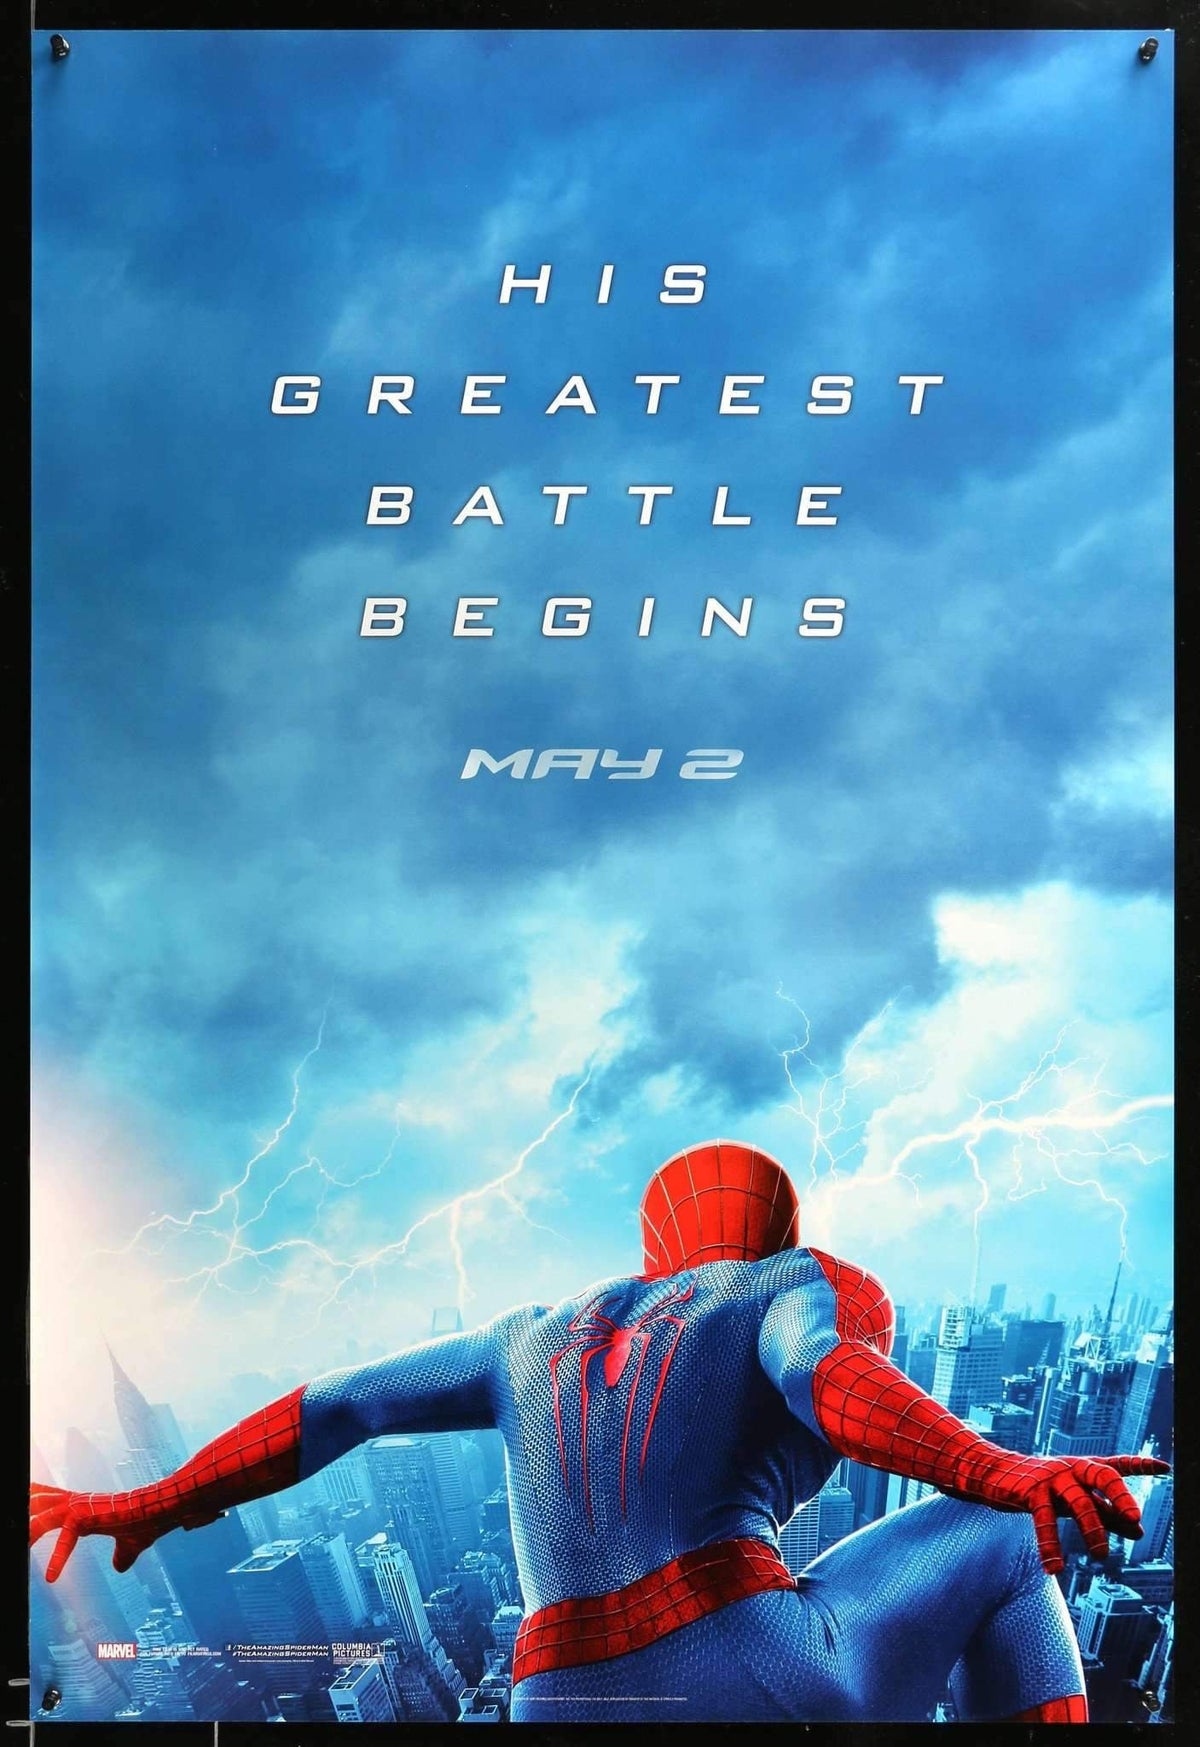 Amazing Spider-Man 2 (2014) original movie poster for sale at Original Film Art